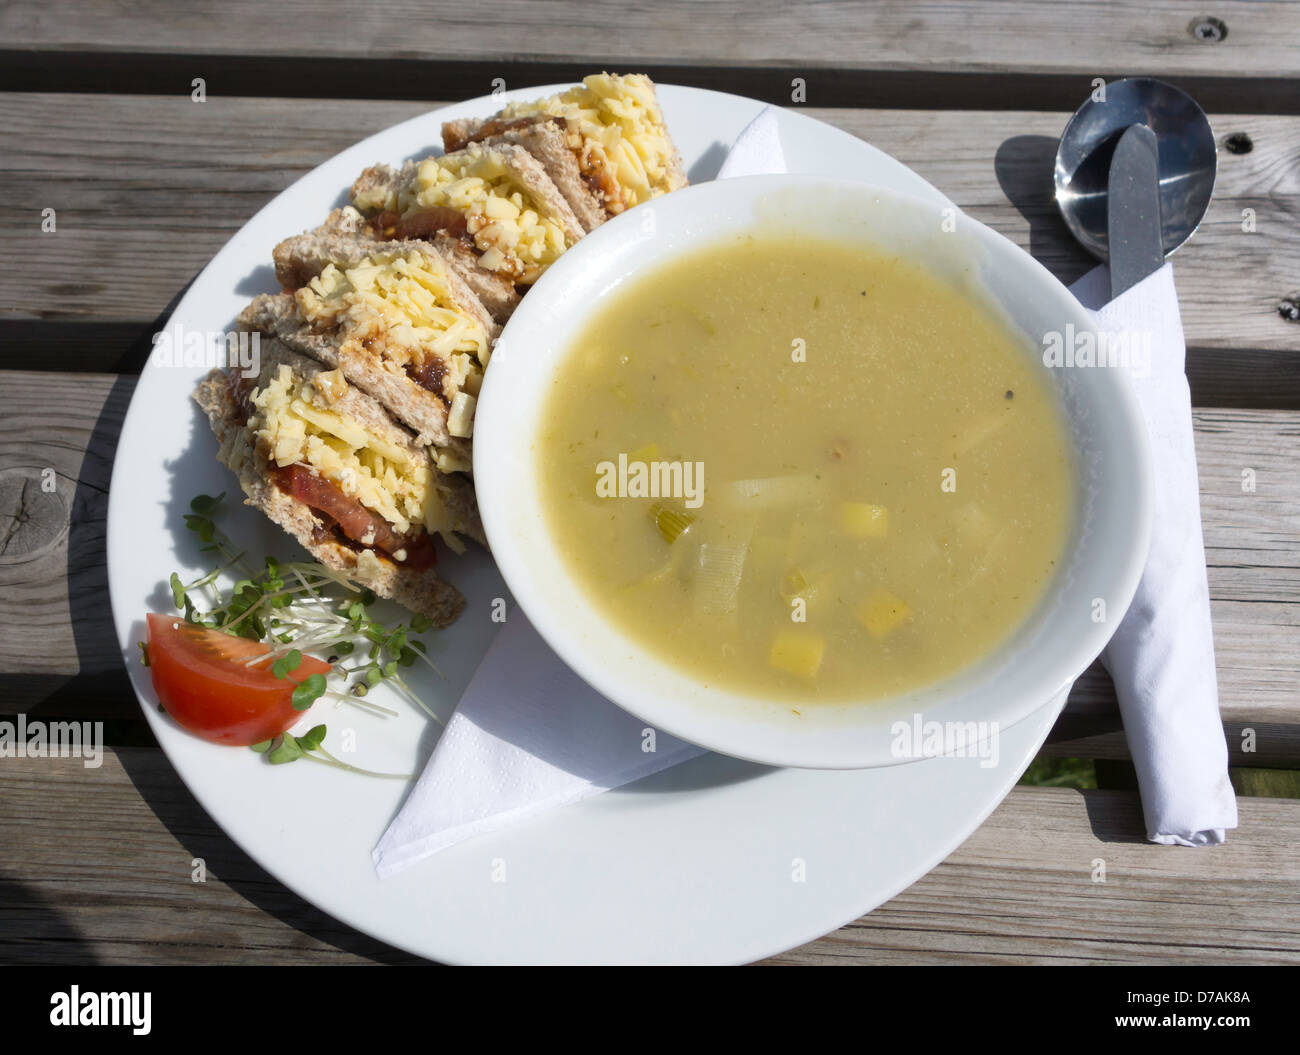 Café le déjeuner un bol de soupe aux poireaux et pommes de terre avec un fromage Cheddar et sandwich cornichon à l'extérieur, au soleil Banque D'Images